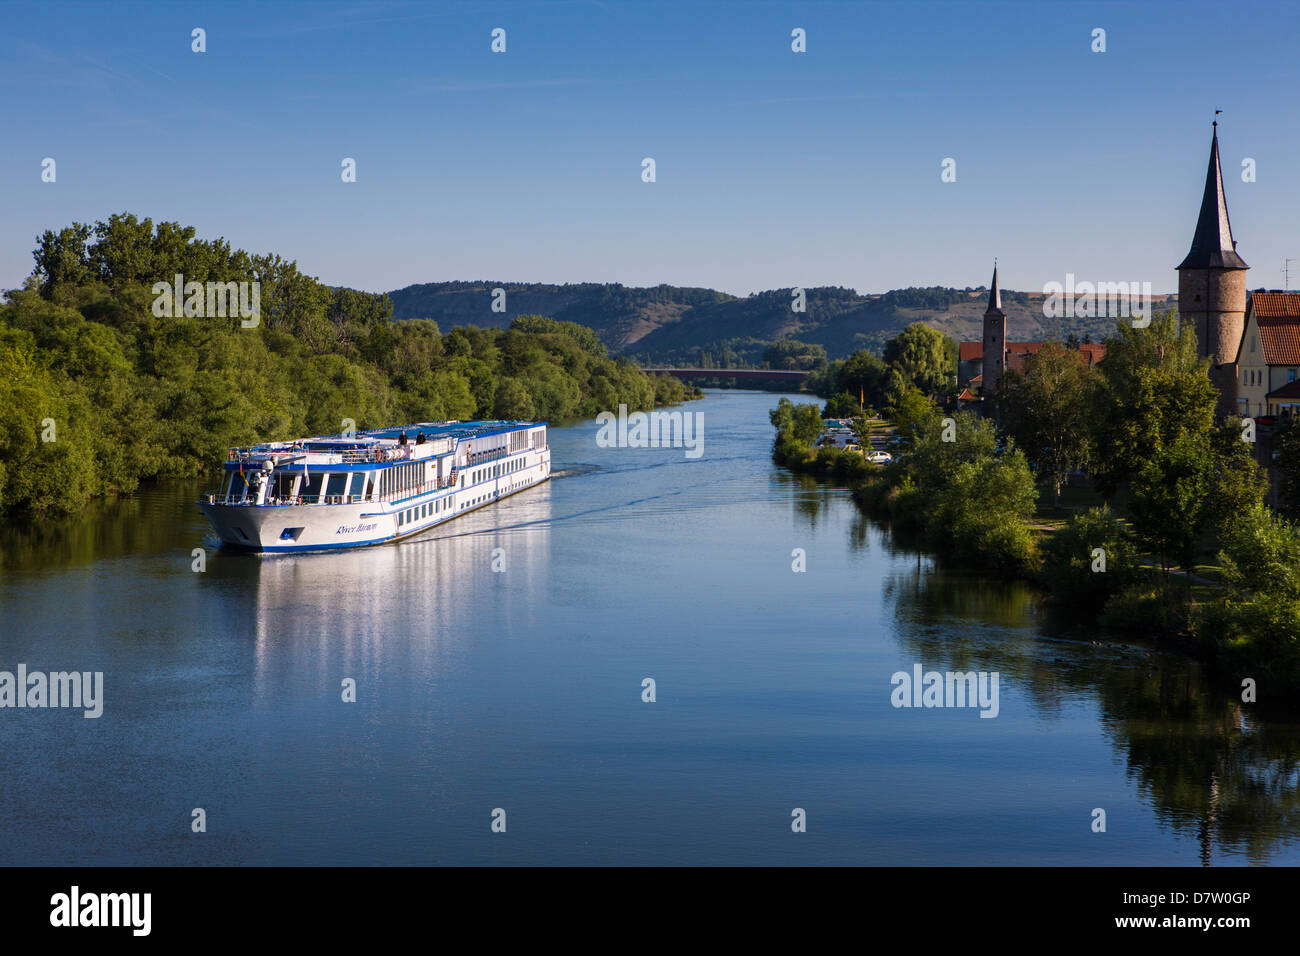 Cruise ship on the Main valley near Karlstadt, Franconia, Bavaria, Germany Stock Photo